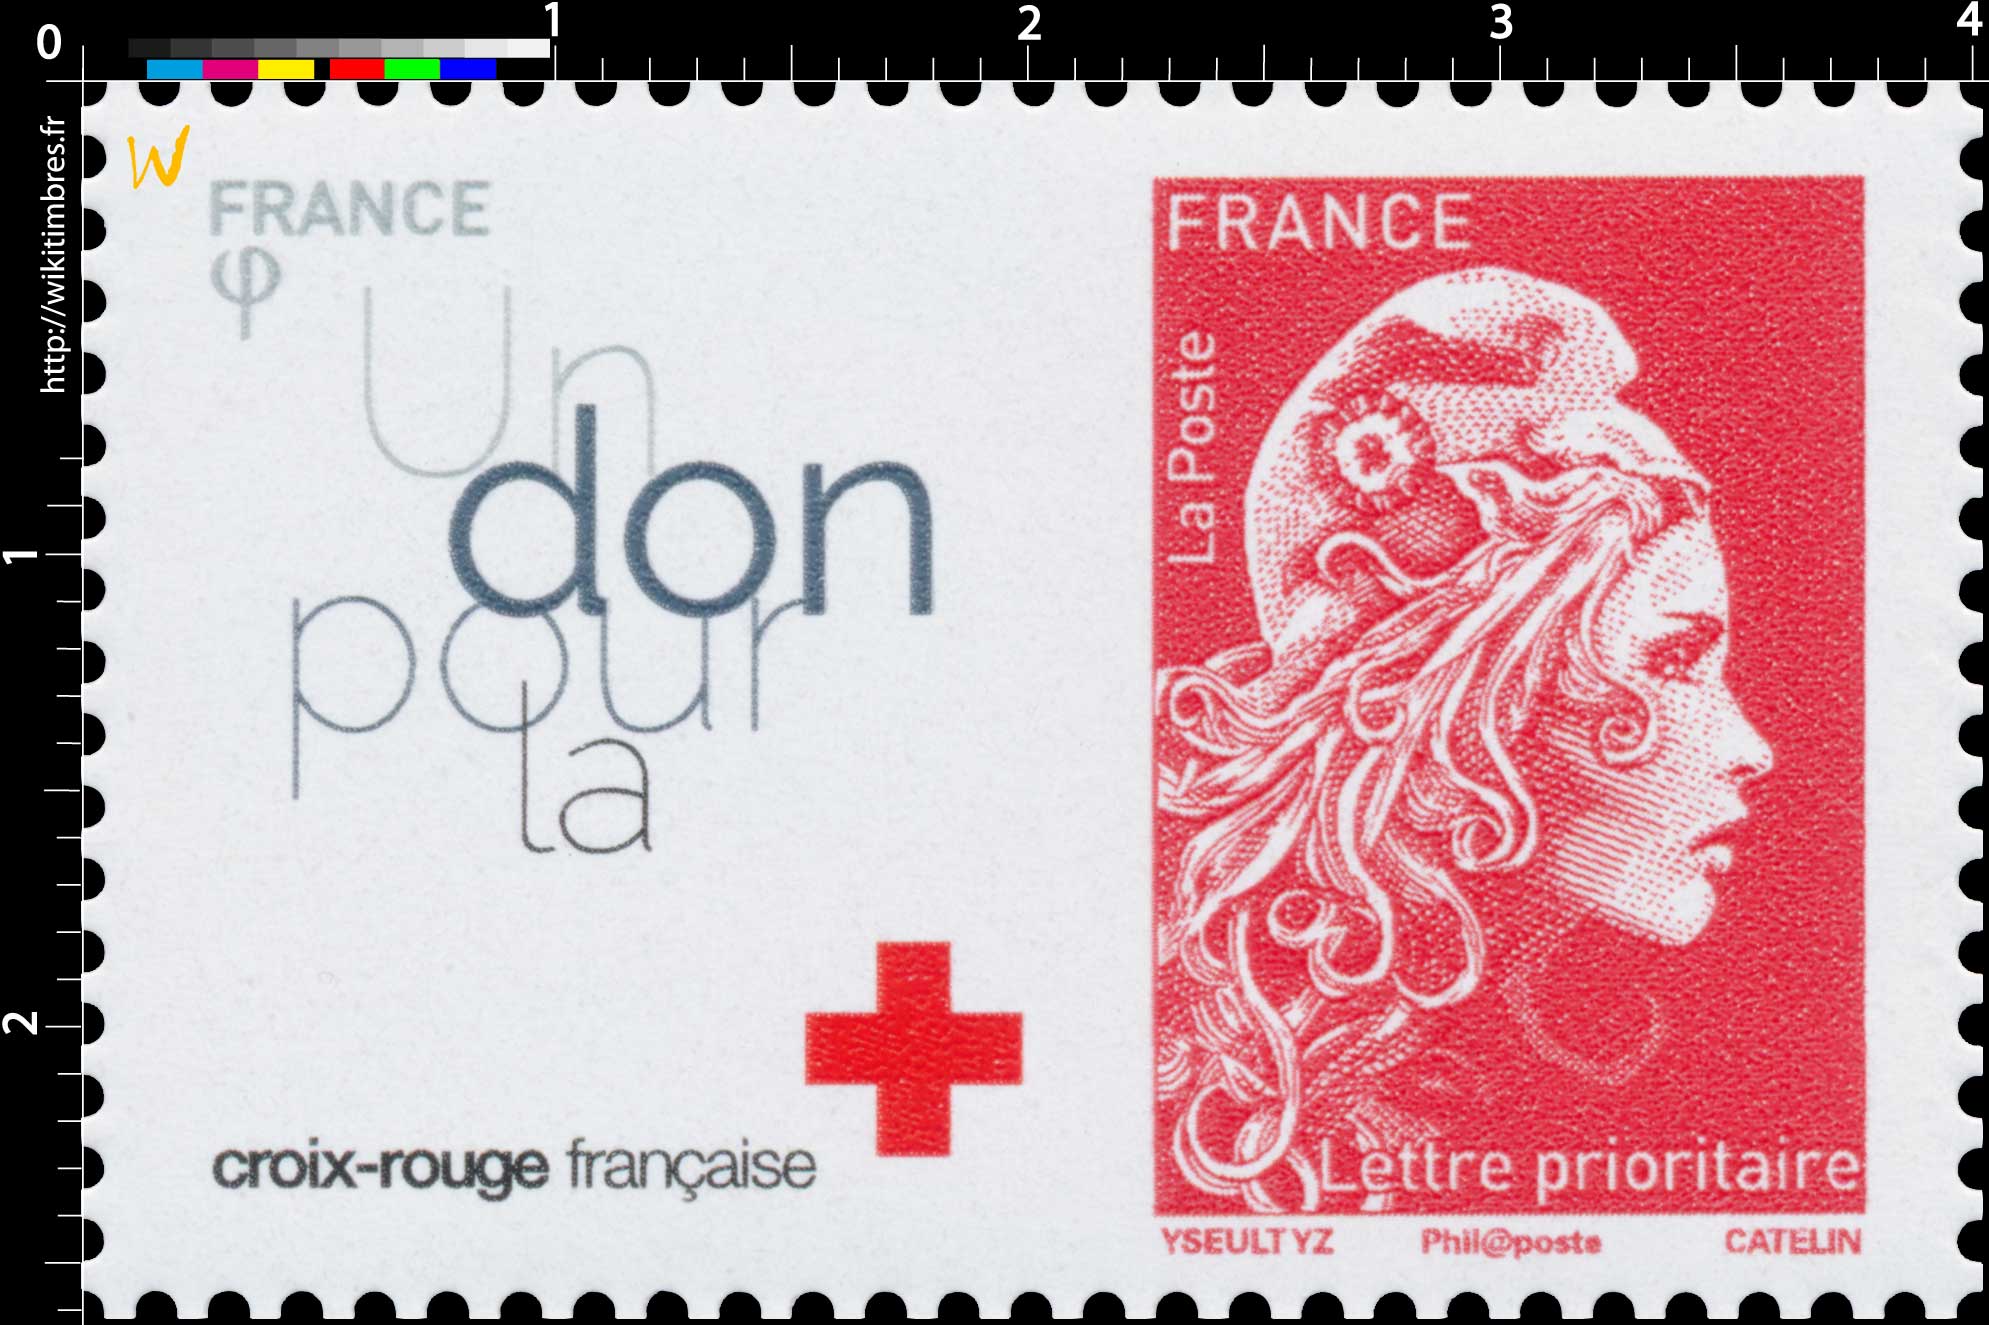 2018 Un don pour la croix-rouge française